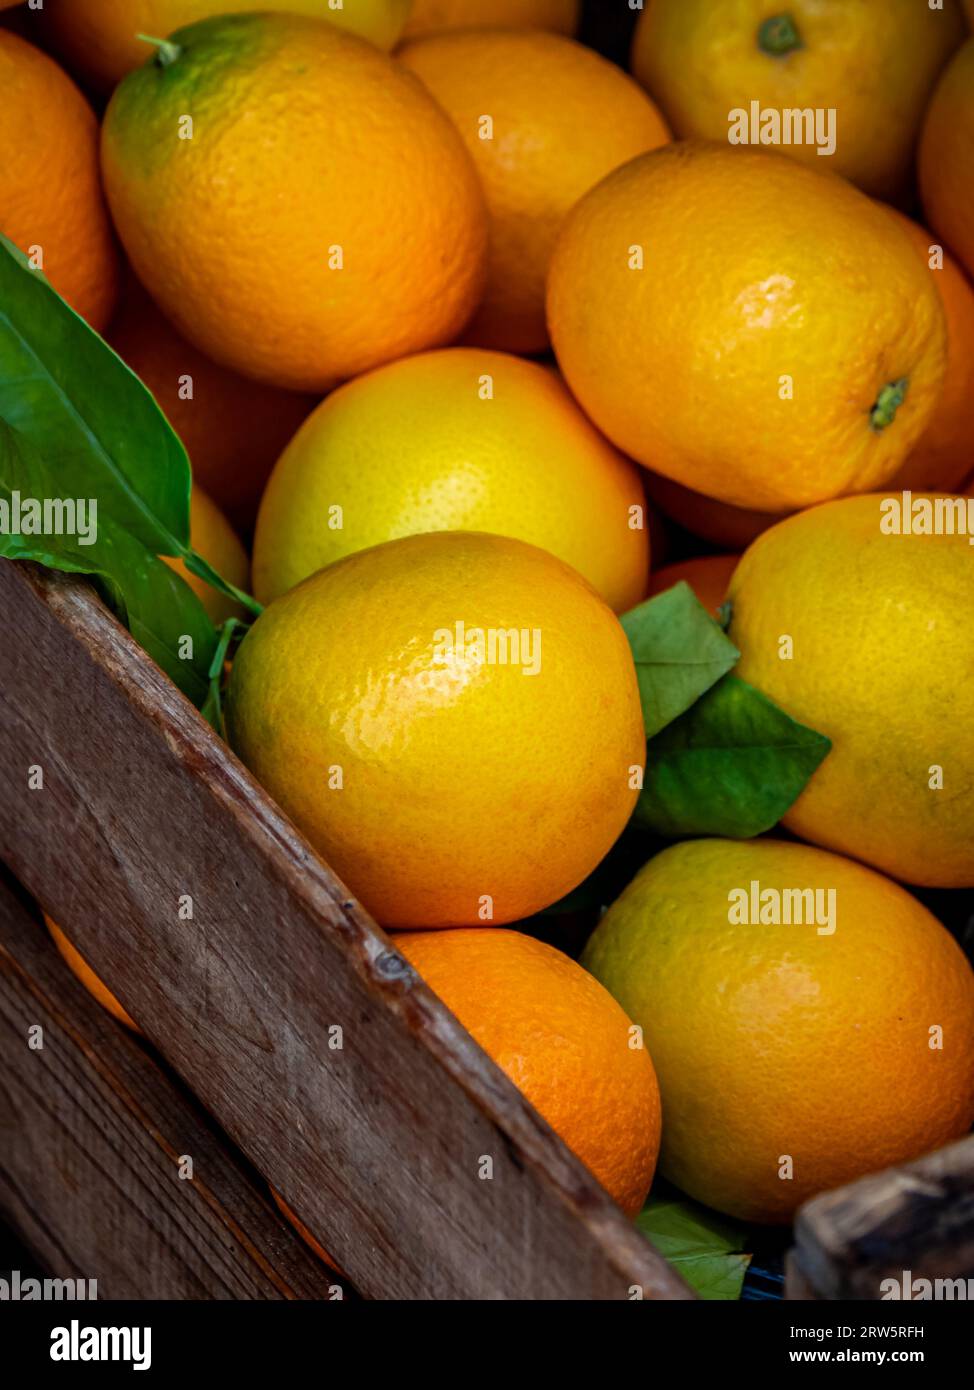 Peret-Orangen in einer Holzkiste, spezielle orangene Obstsorte aus dem Sóller-Tal mit einer einzigartigen birnenartigen Form, leuchtend gelb-grün und perfekt Stockfoto